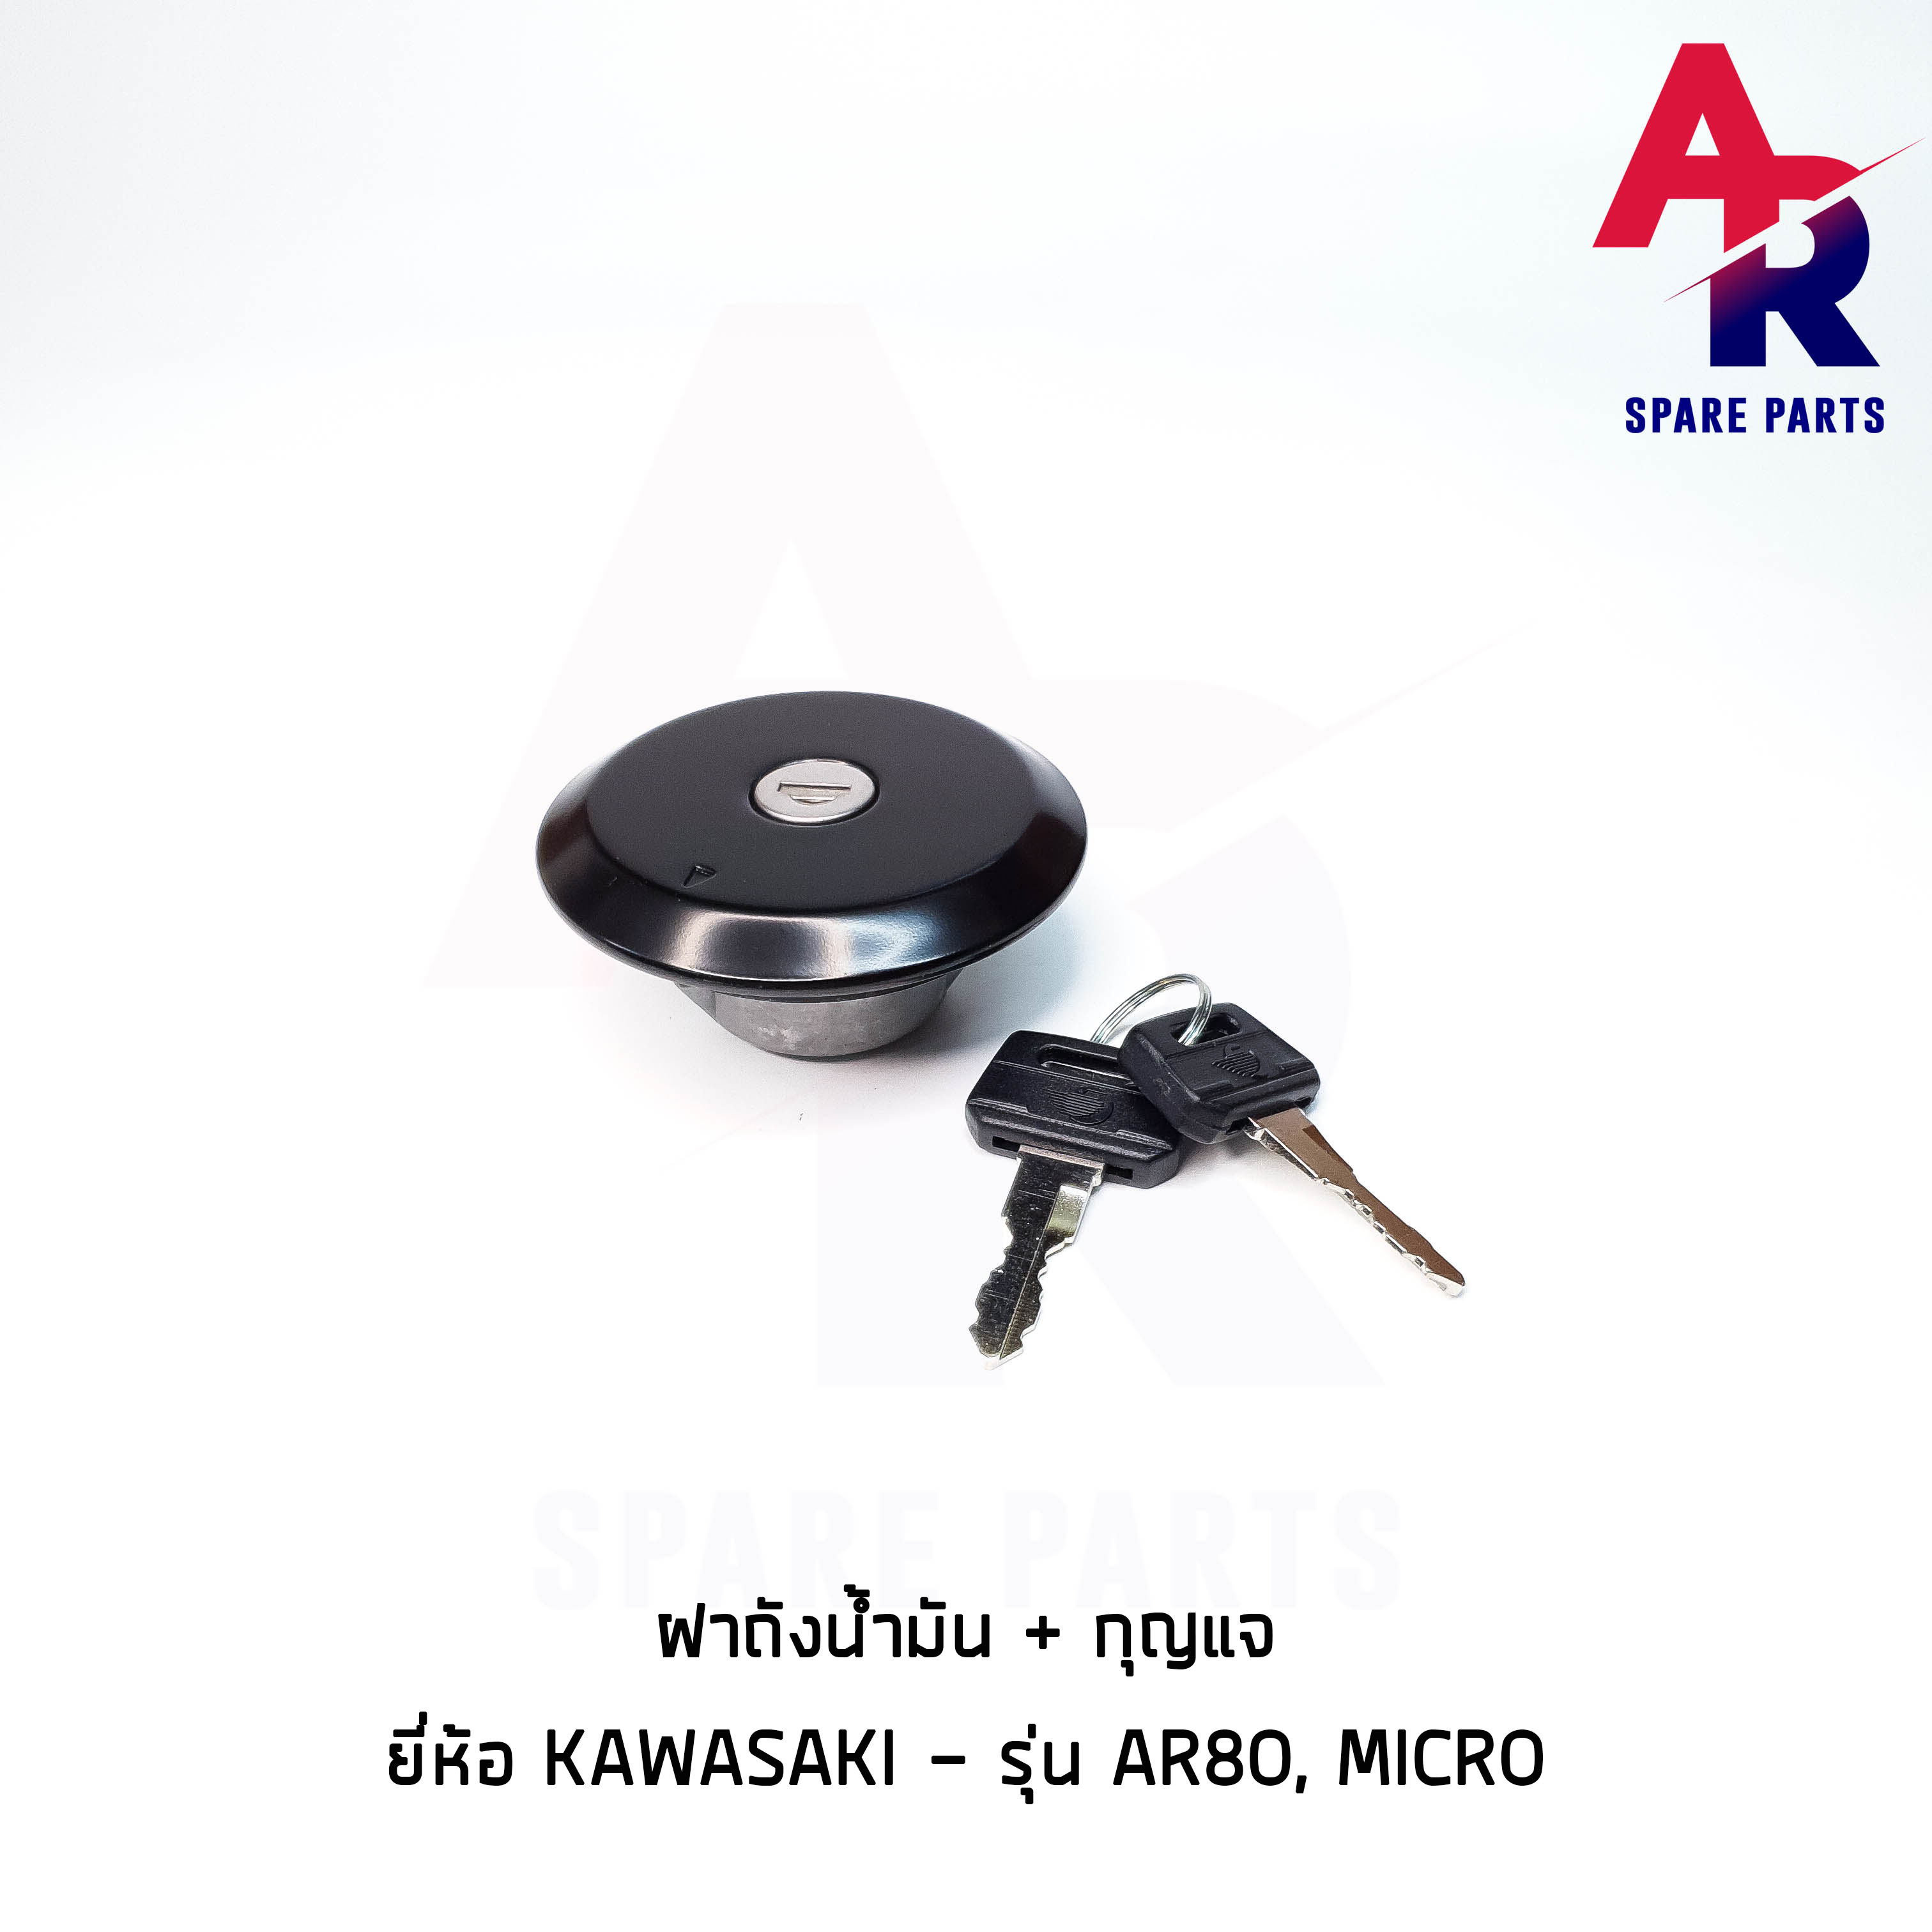 ฝาถังน้ำมัน + กุญแจ KAWASAKI - AR80 , MICRO